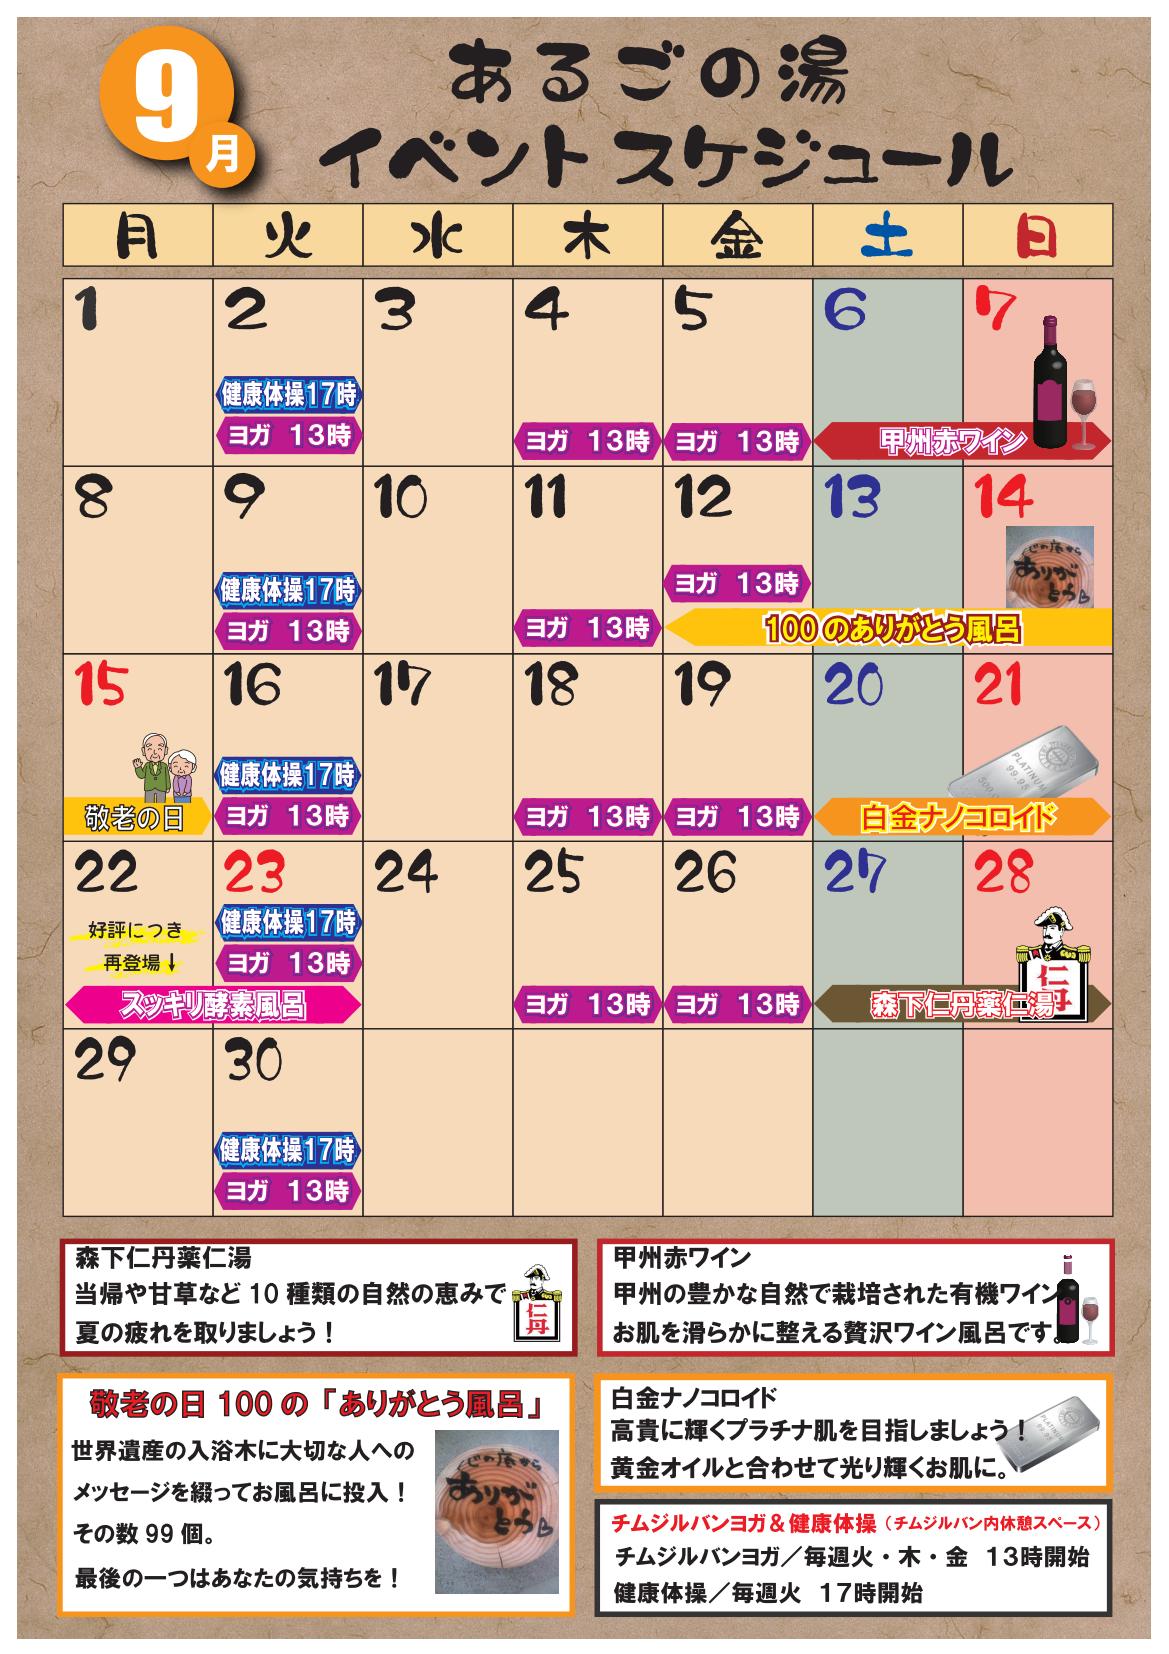 9月カレンダー_01.jpg